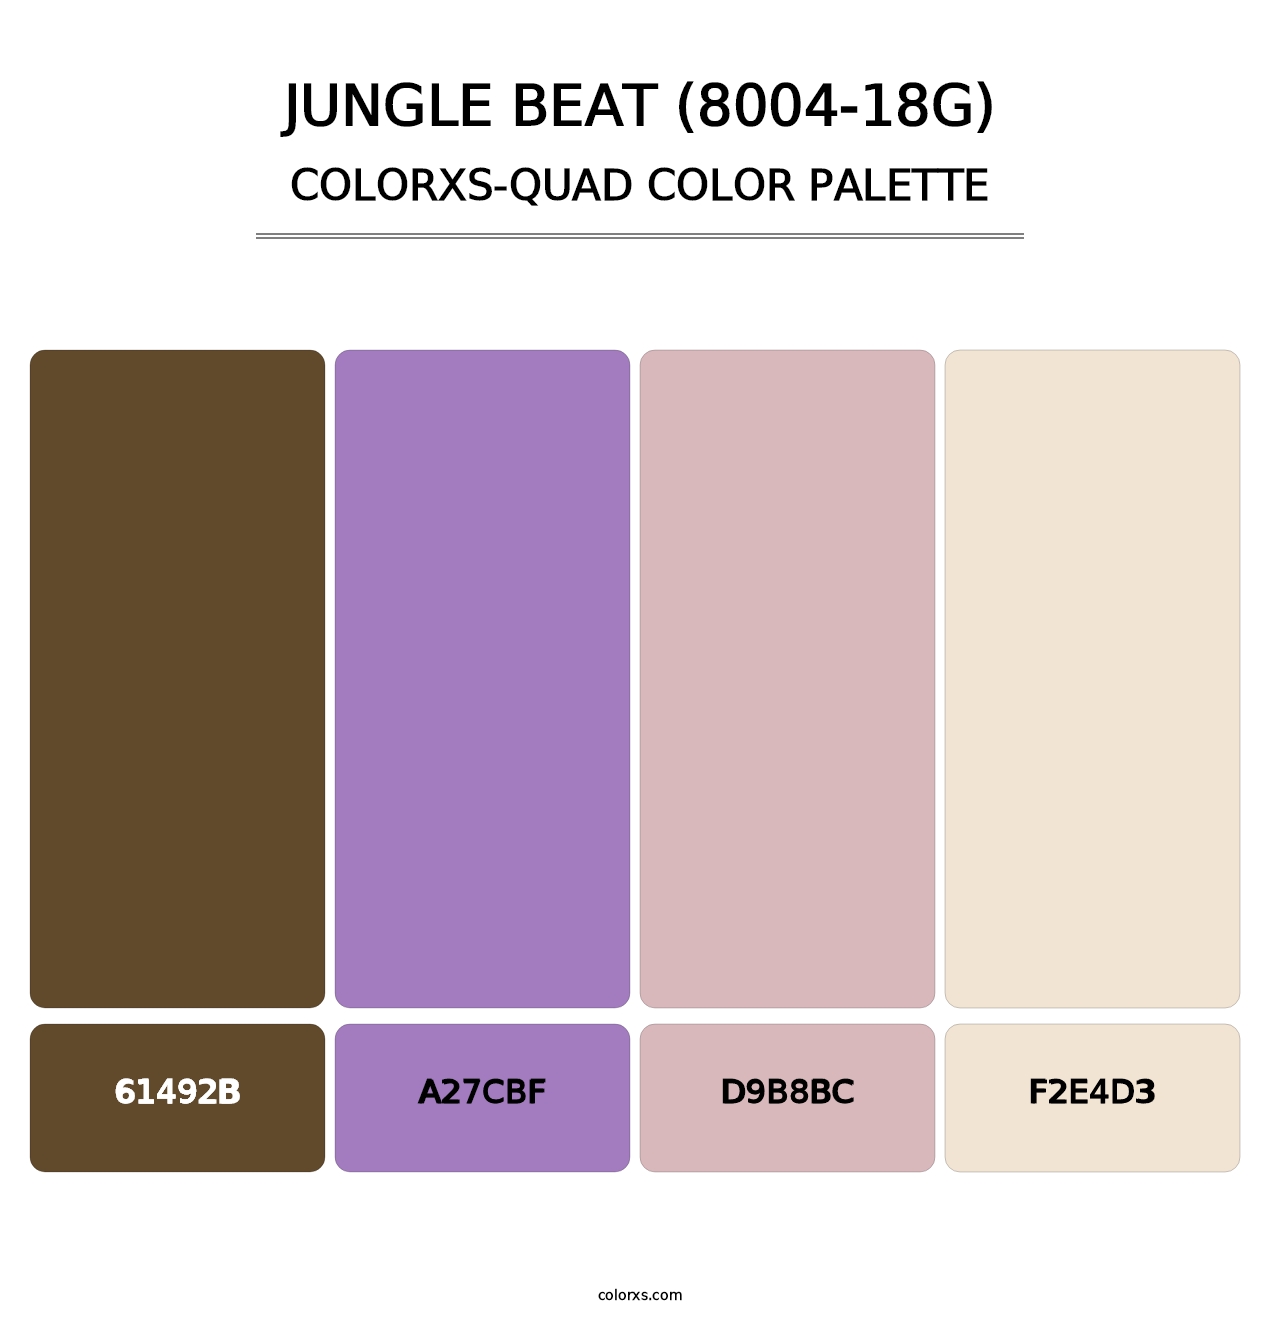 Jungle Beat (8004-18G) - Colorxs Quad Palette